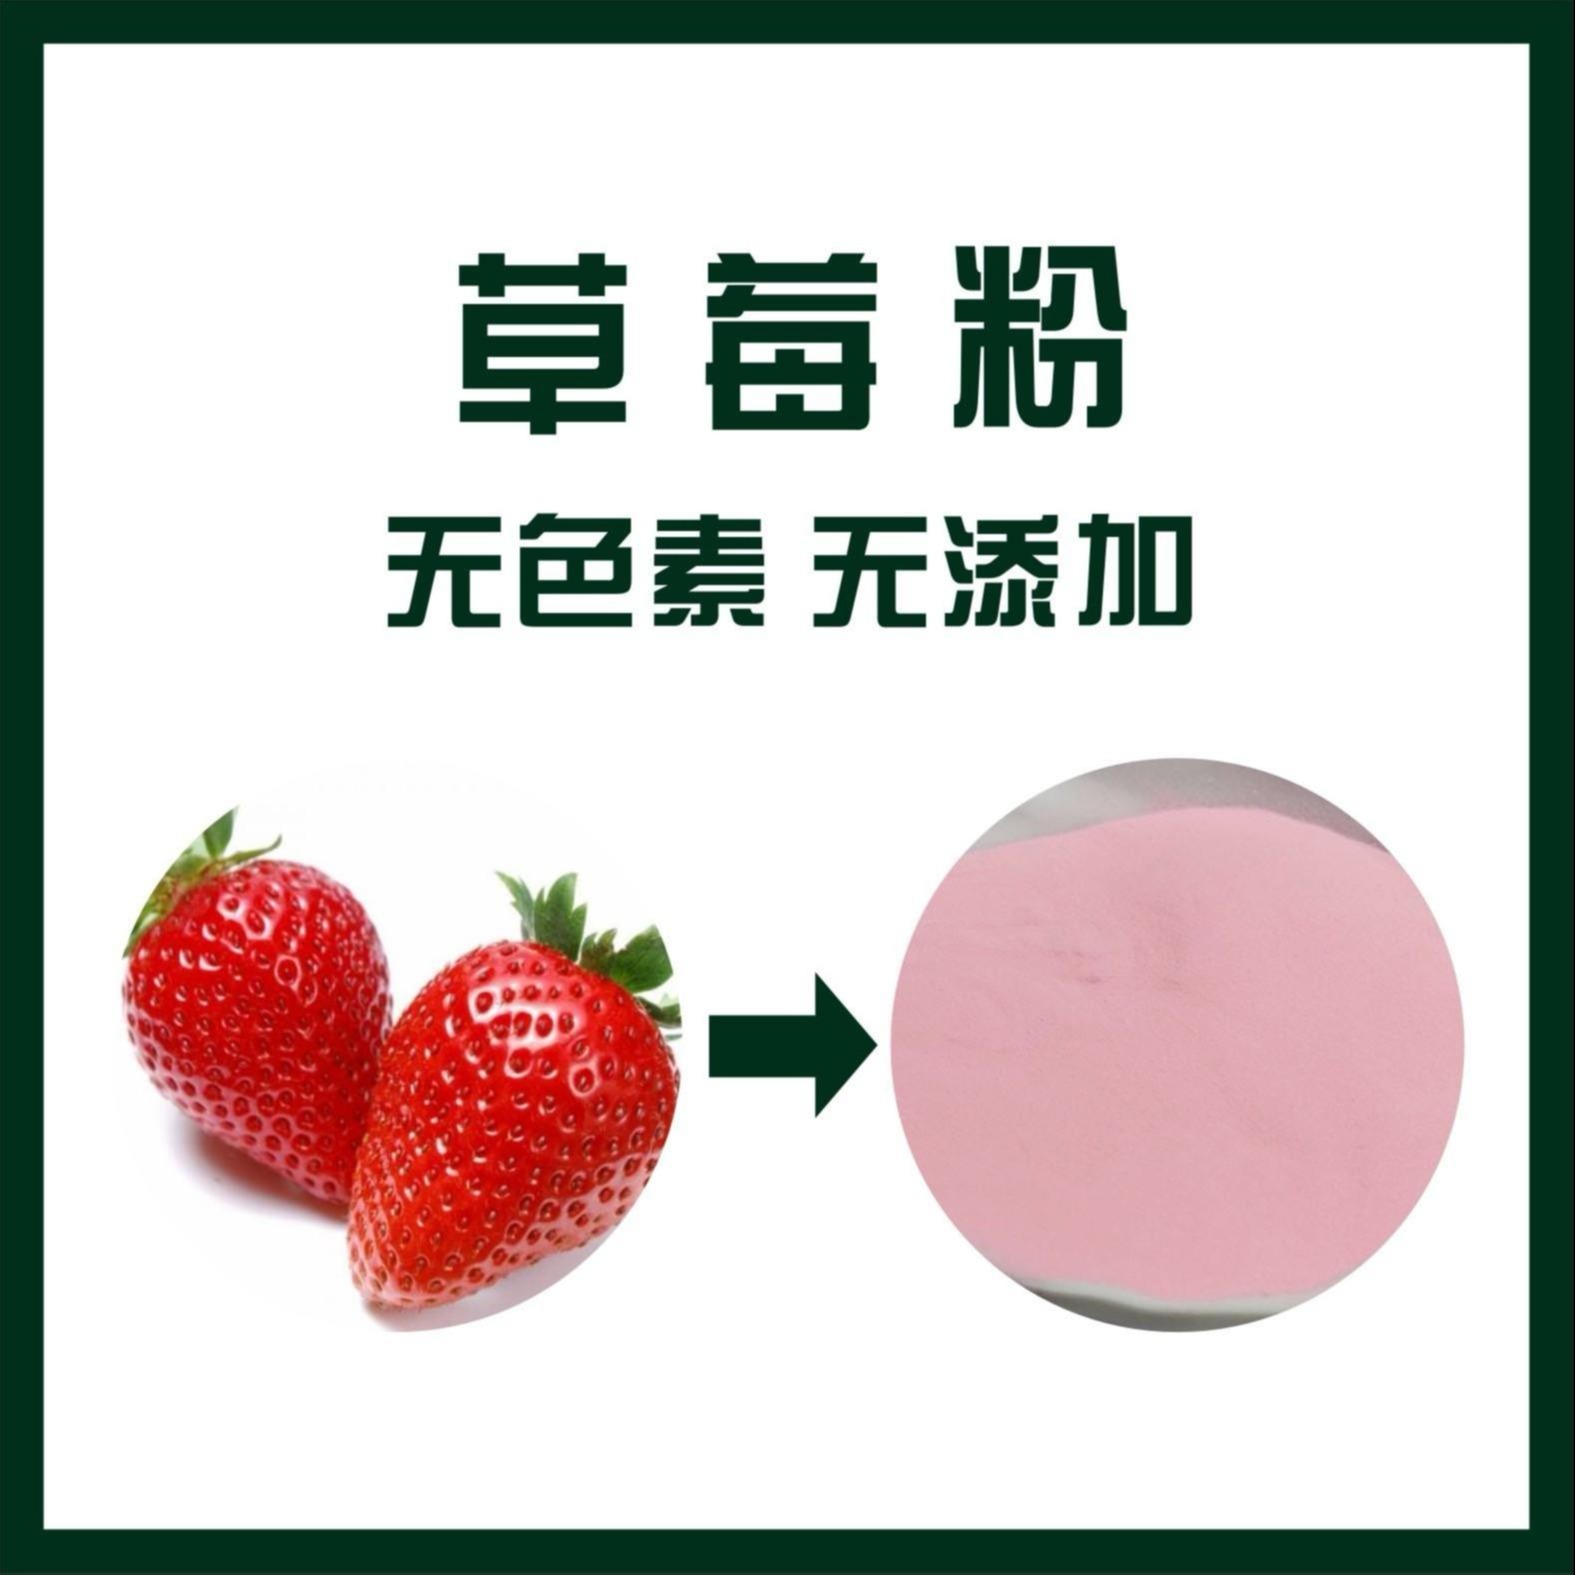 草莓粉 草莓浓缩汁粉 烘焙原料 现货包邮 厂家供应图片